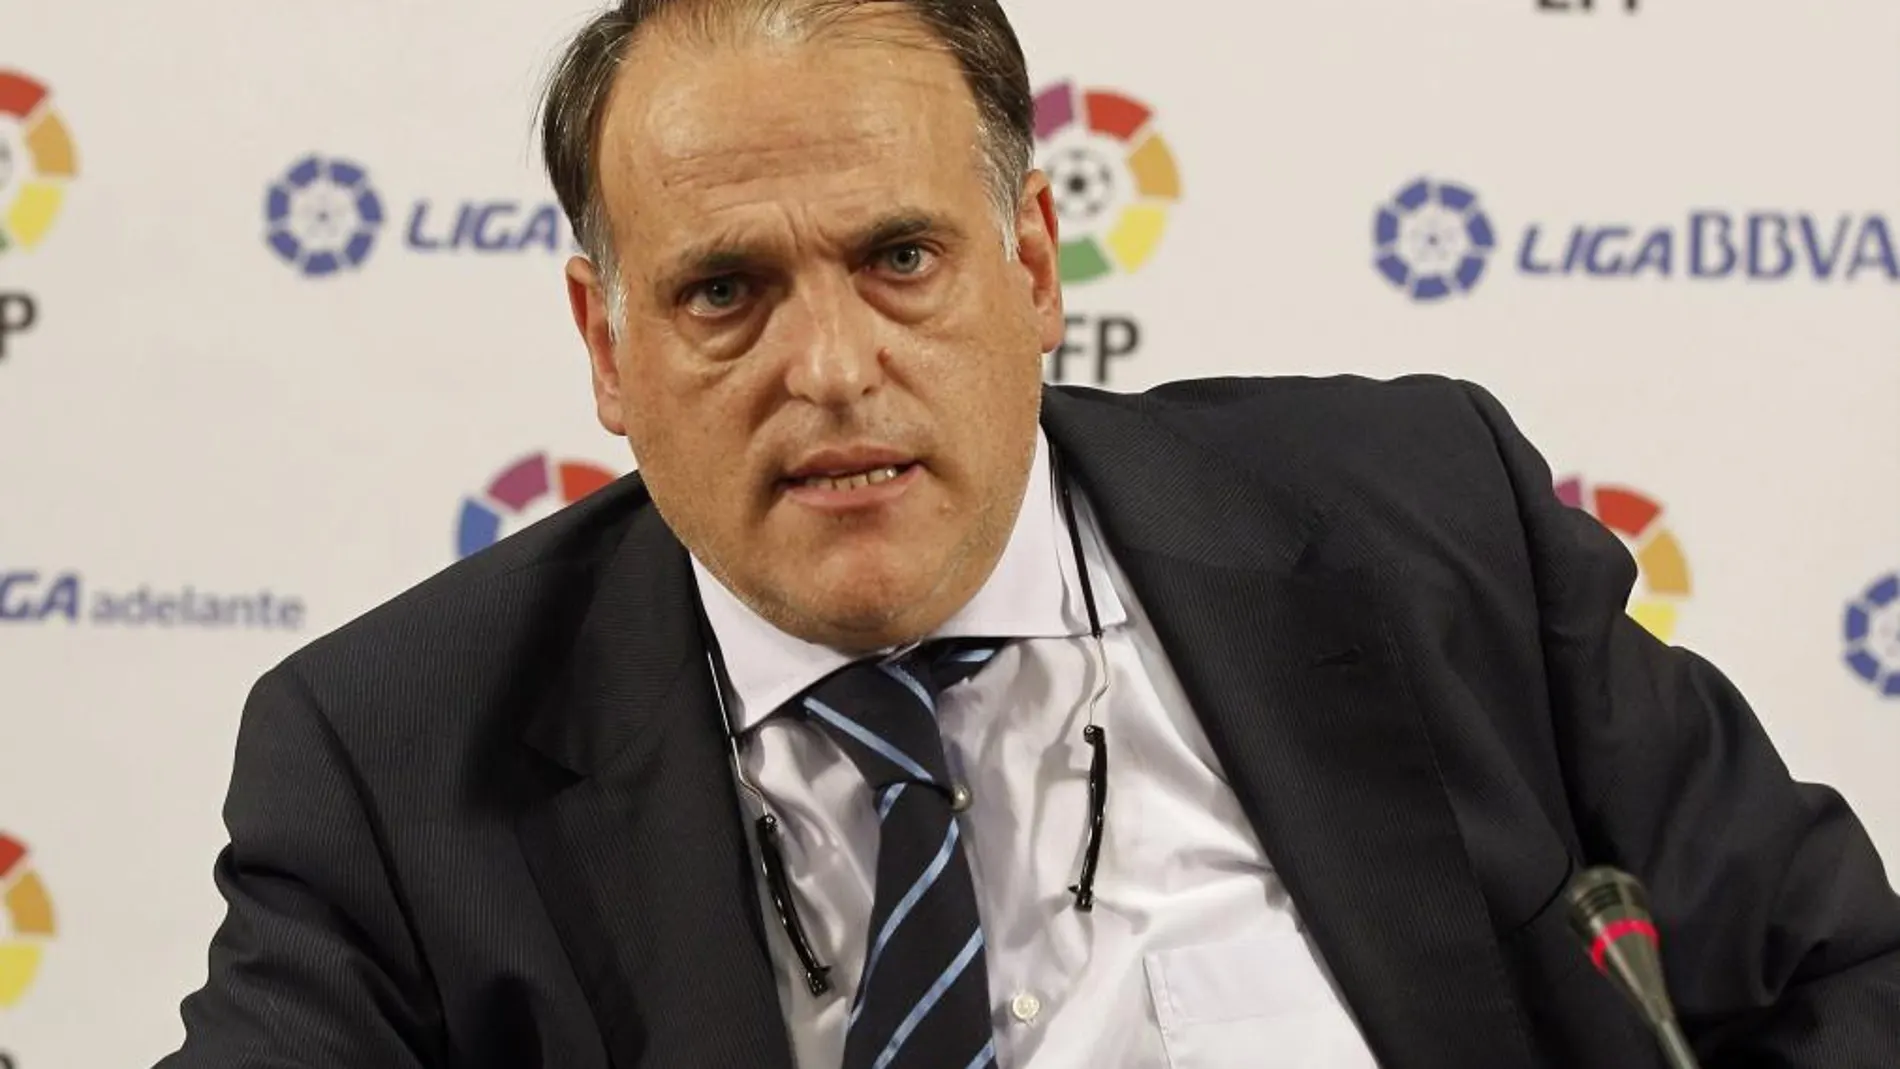 El presidente de la Liga de Fútbol Profesional (LFP), Javier Tebas, durante la rueda de prensa que ofreció ayer en la que confirmaba que se mantiene al Mirandés como equipo de la Liga Adelante